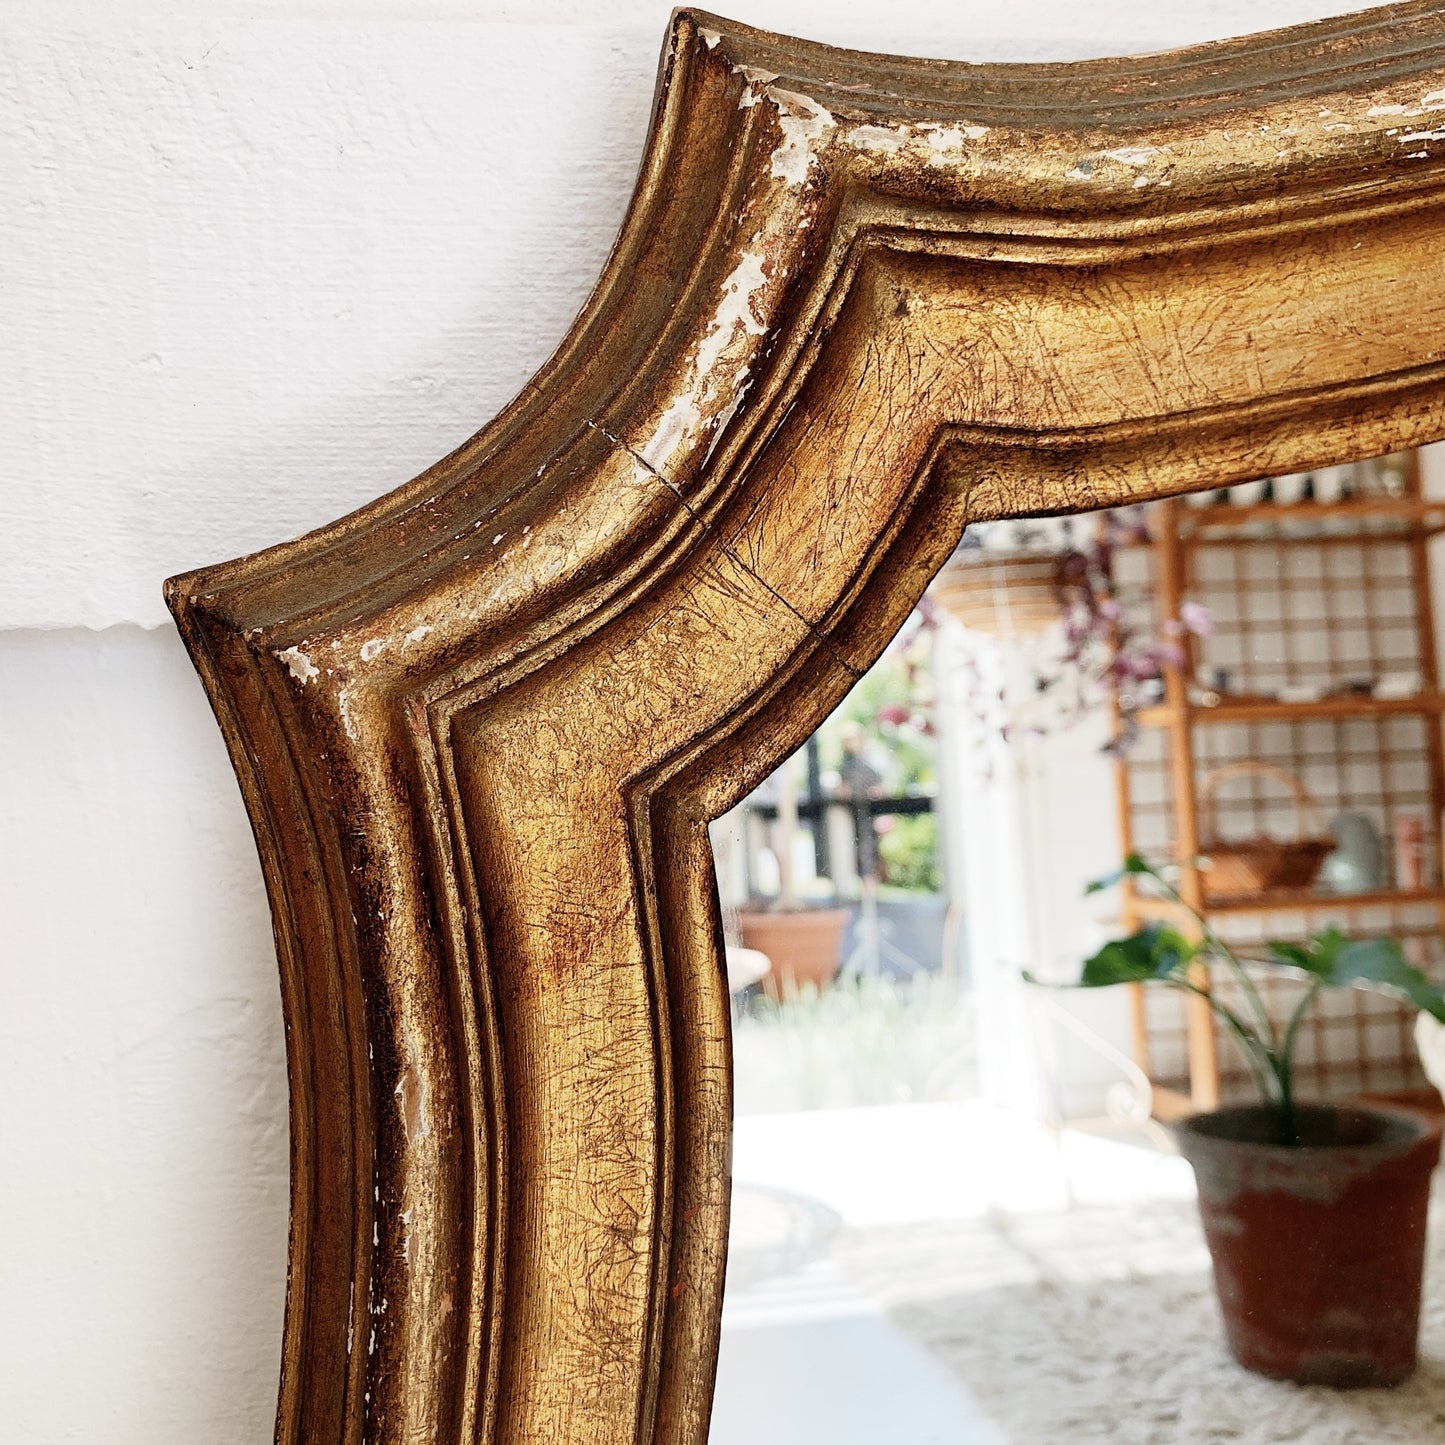 Italian Mid Century Gilt-wood Mirror